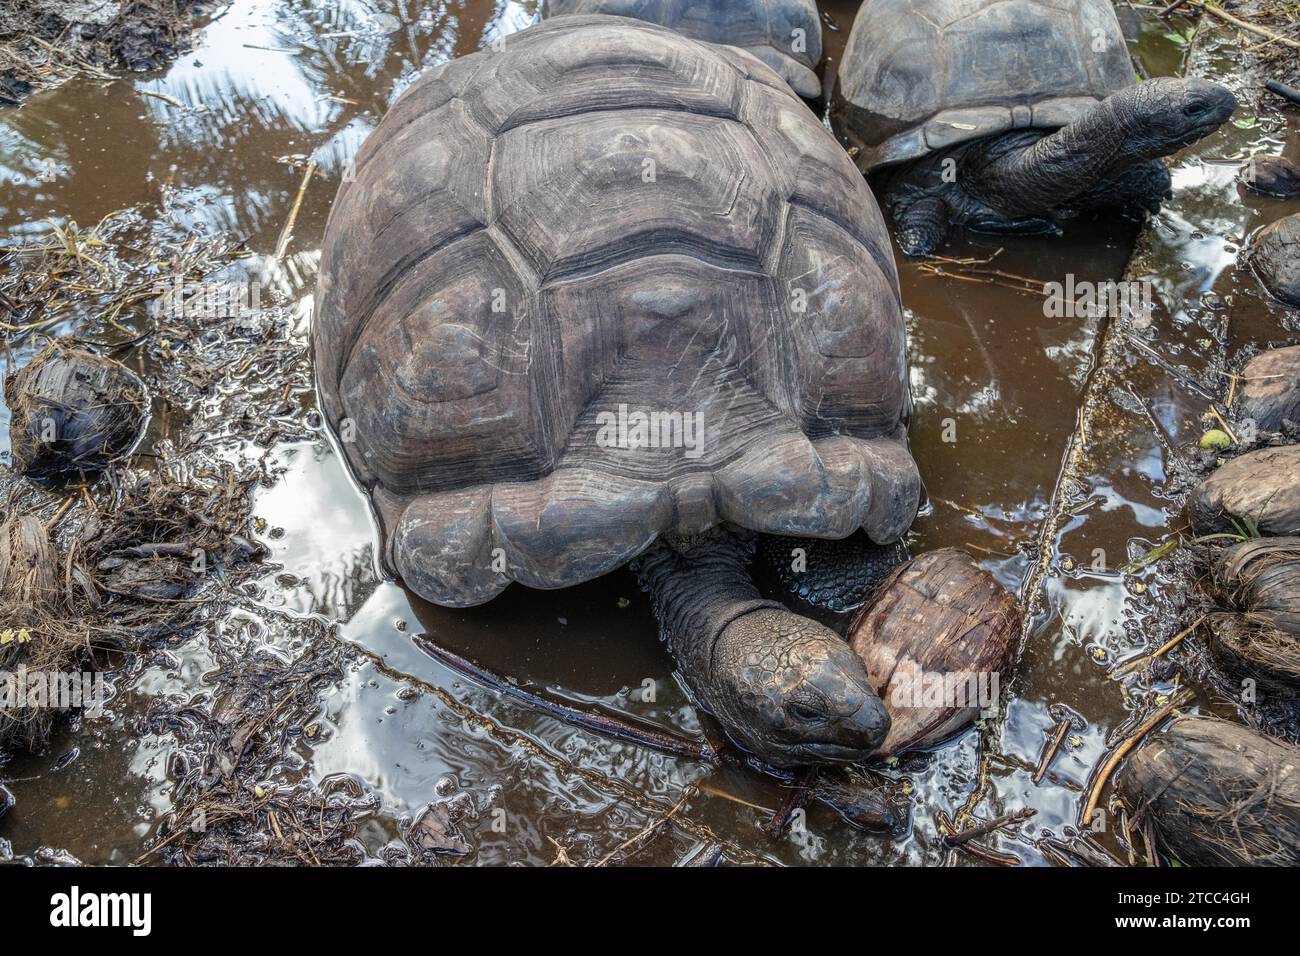 Les tortues de terre géantes (dipsochelys gigantea) sur l'île de Praslin Seychelles Banque D'Images